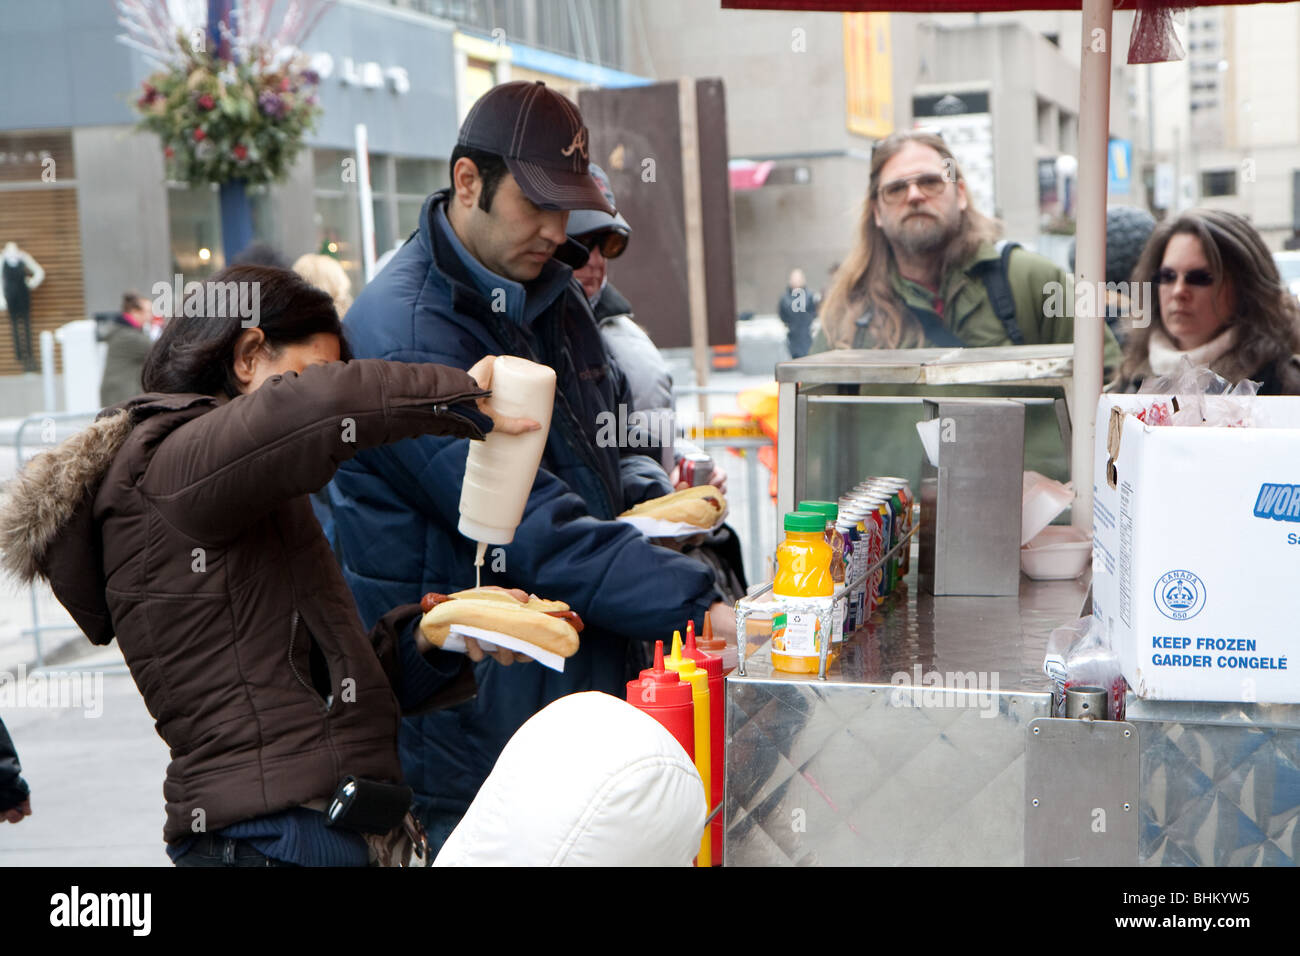 Les clients faisant la queue à un stand hotdog au cours d'un après-midi d'hiver toronto nuageux Banque D'Images